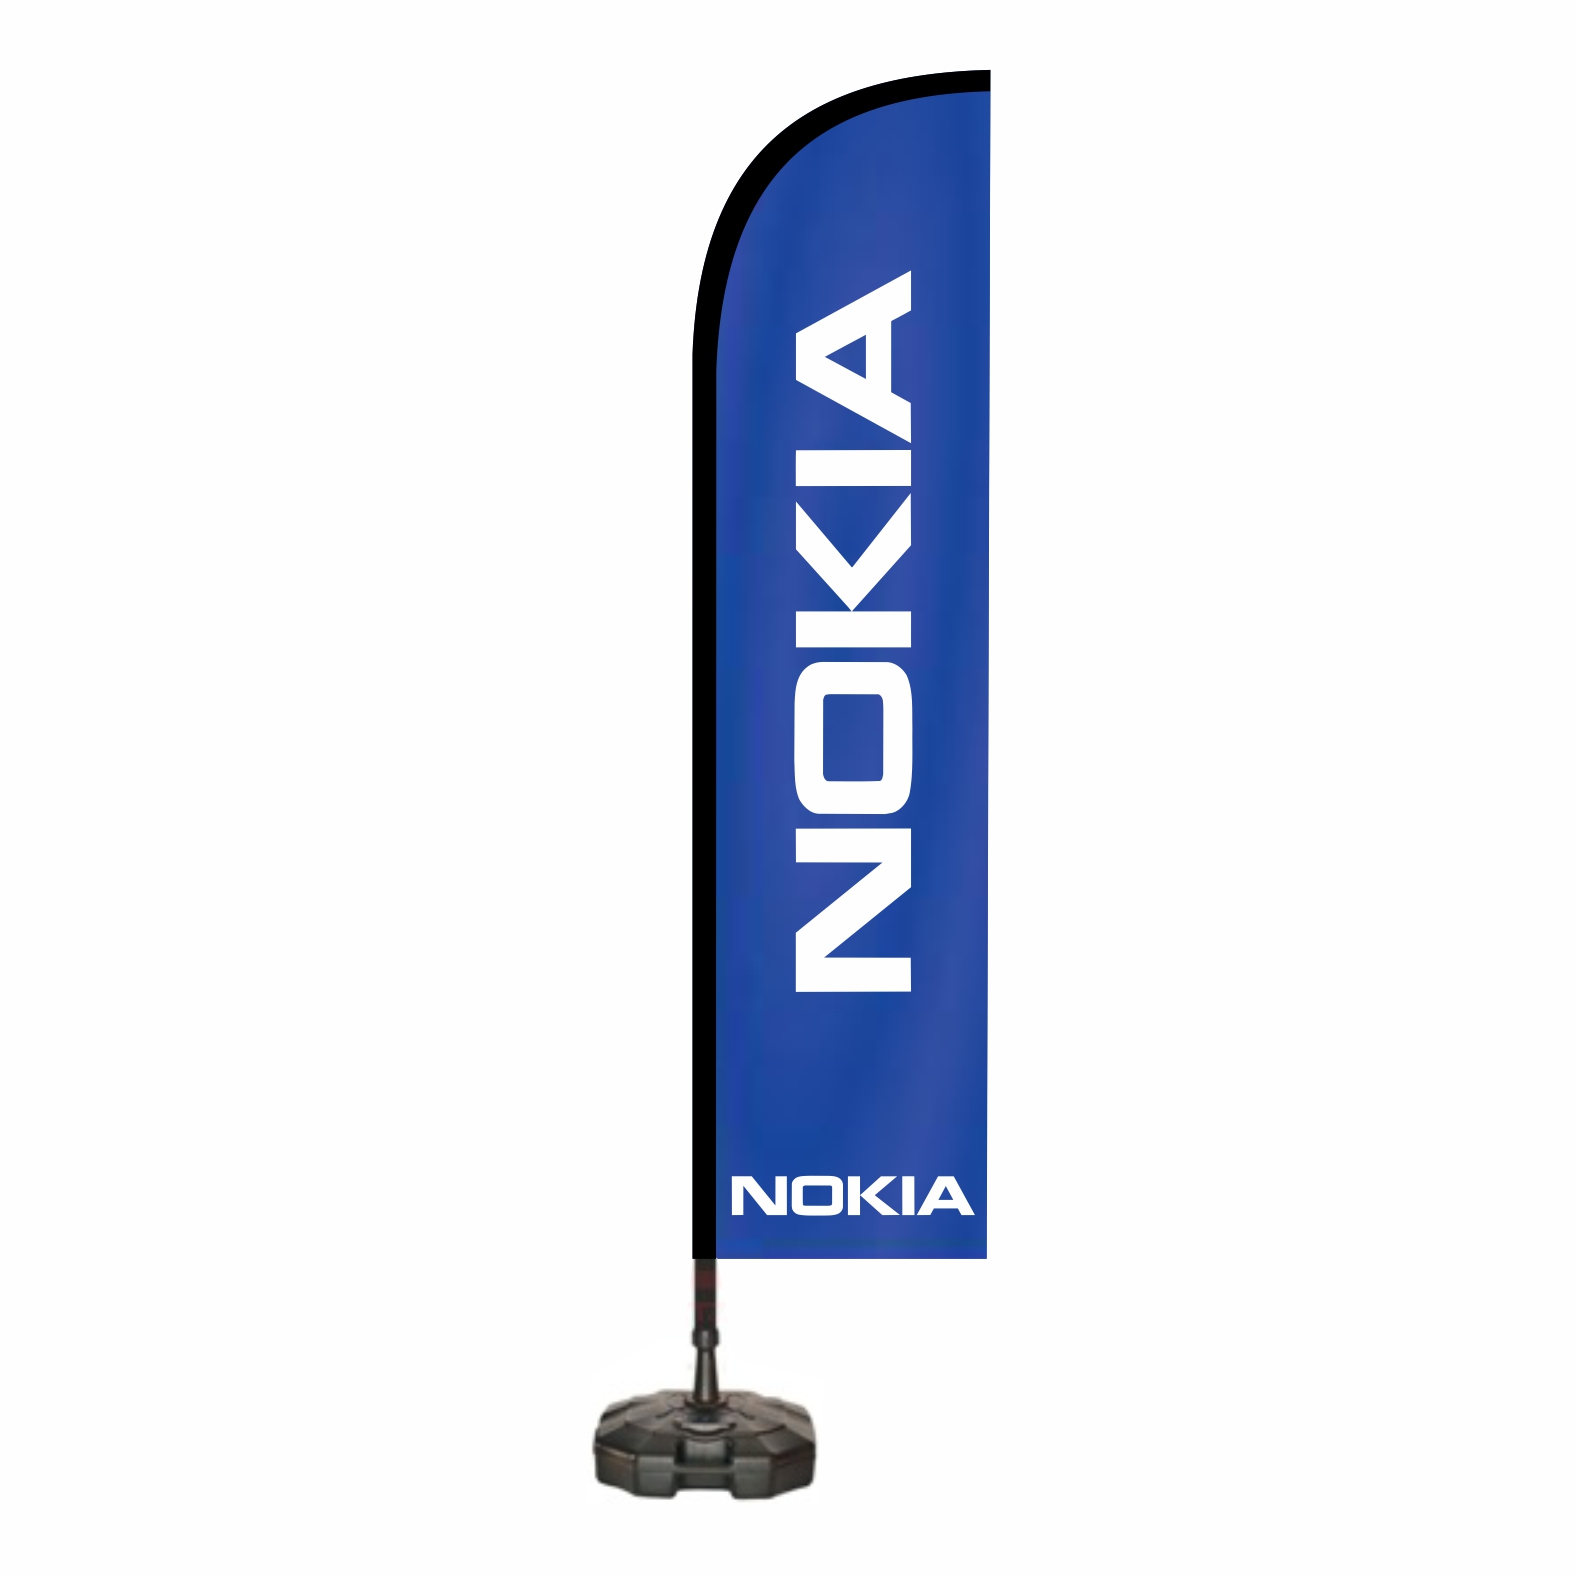 Nokia Dkkan n Bayra Yapan Firmalar